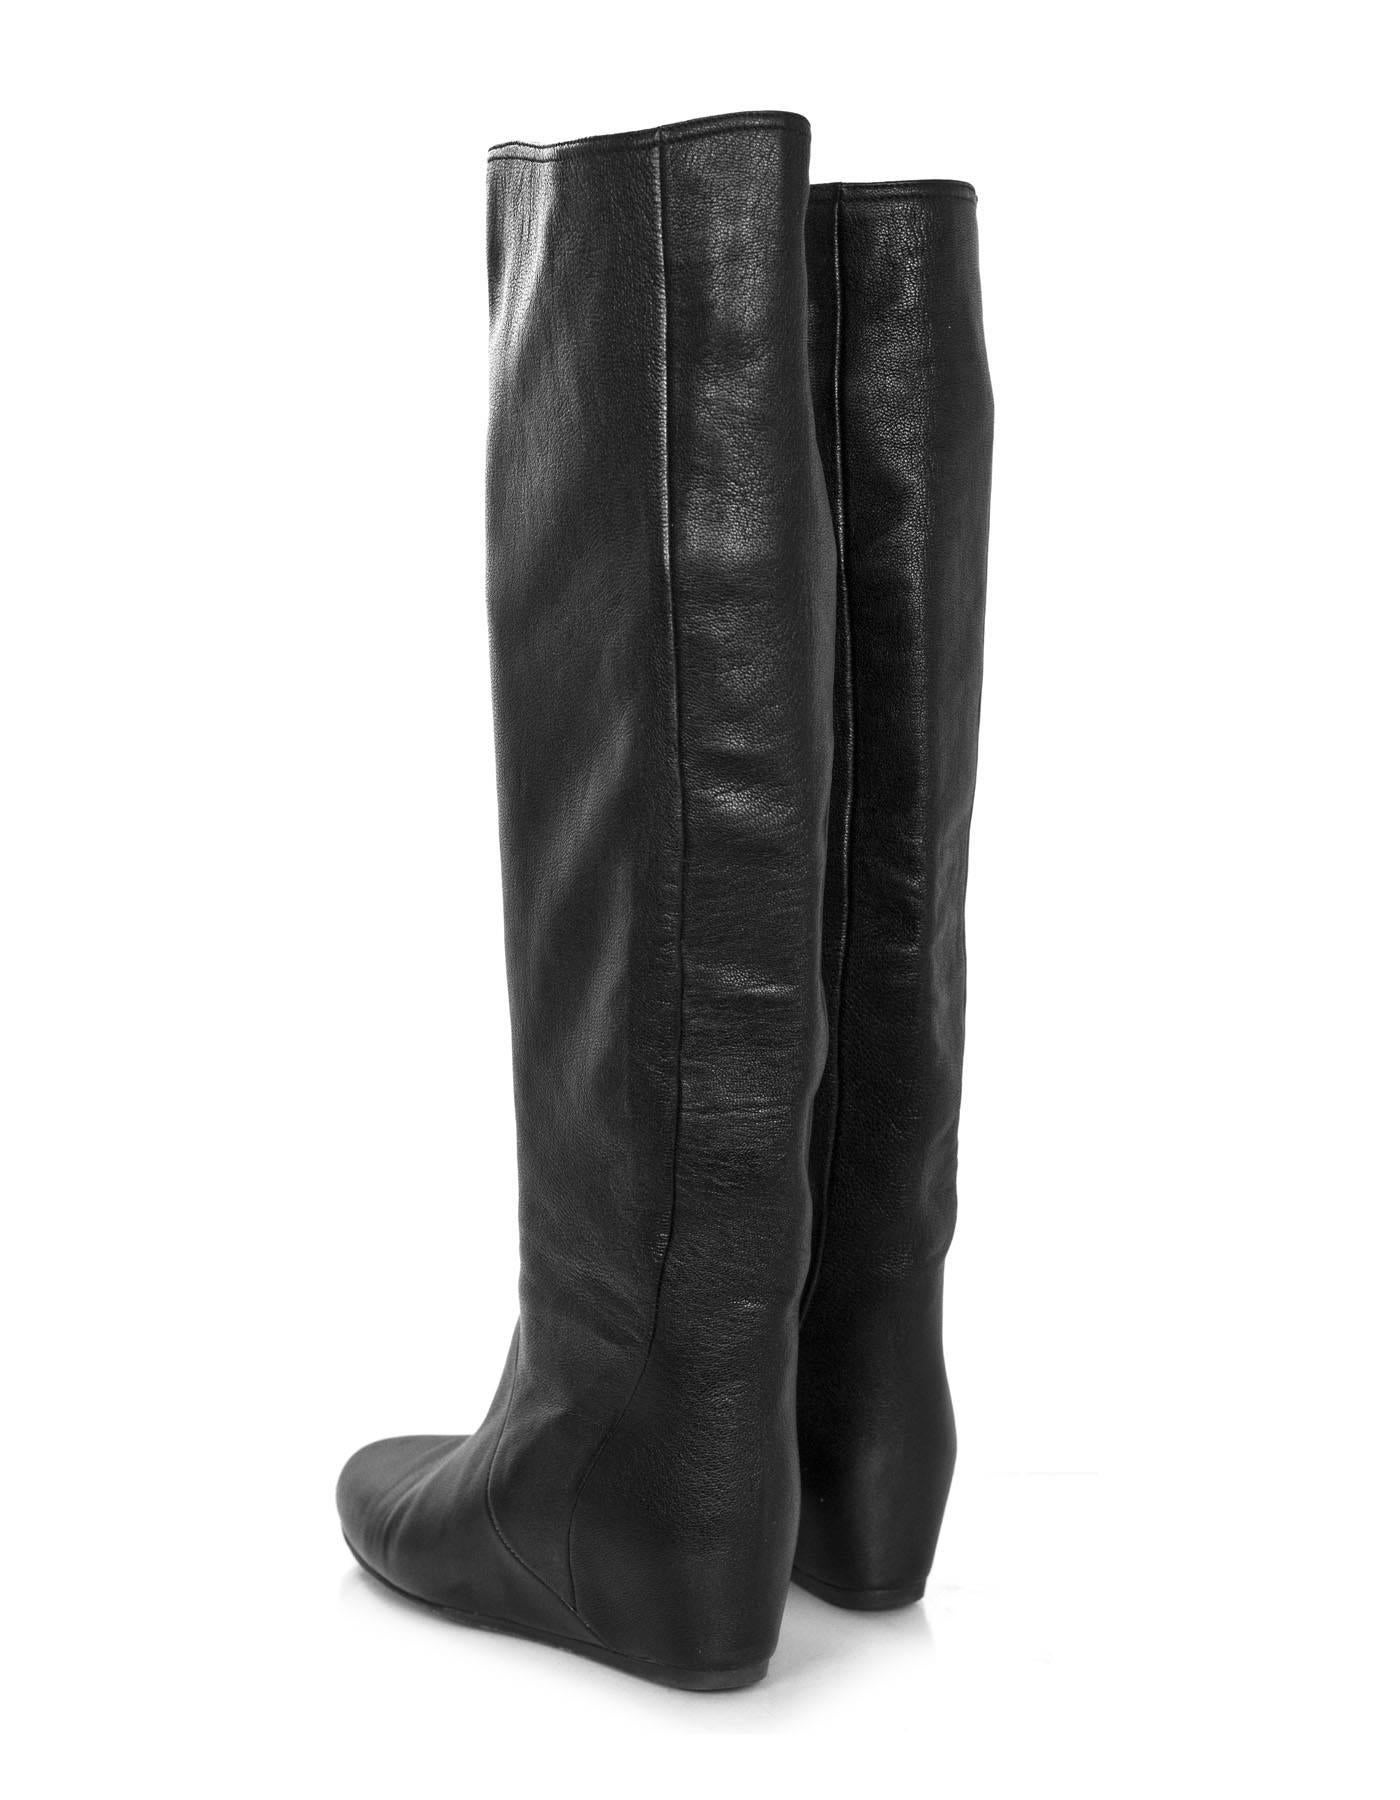 Women's Lanvin Black Leather Boots Sz 38